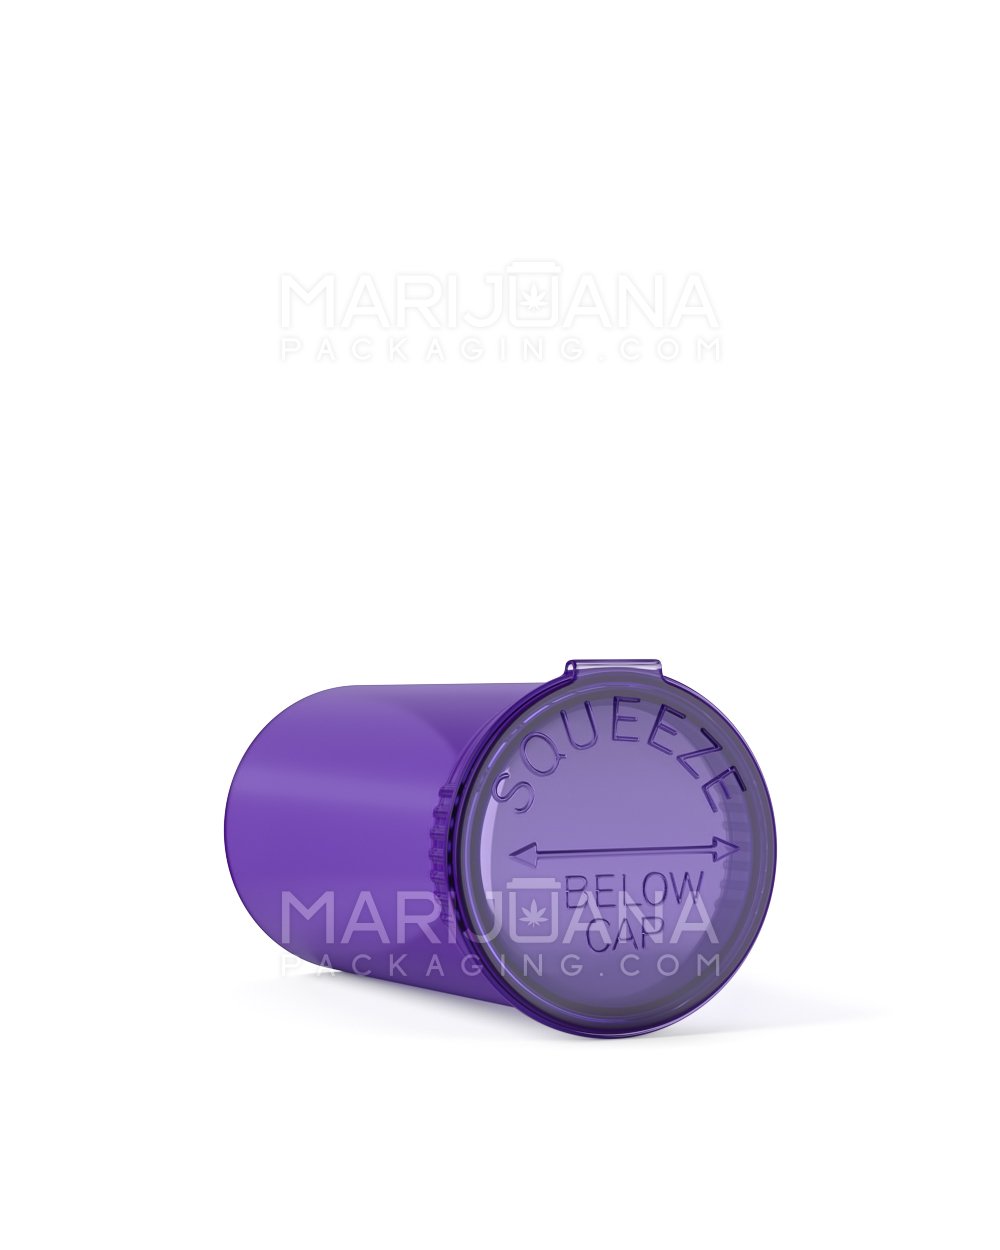 Child Resistant | Transparent Purple Pop Top Bottles | 13dr - 2g - 315 Count - 3